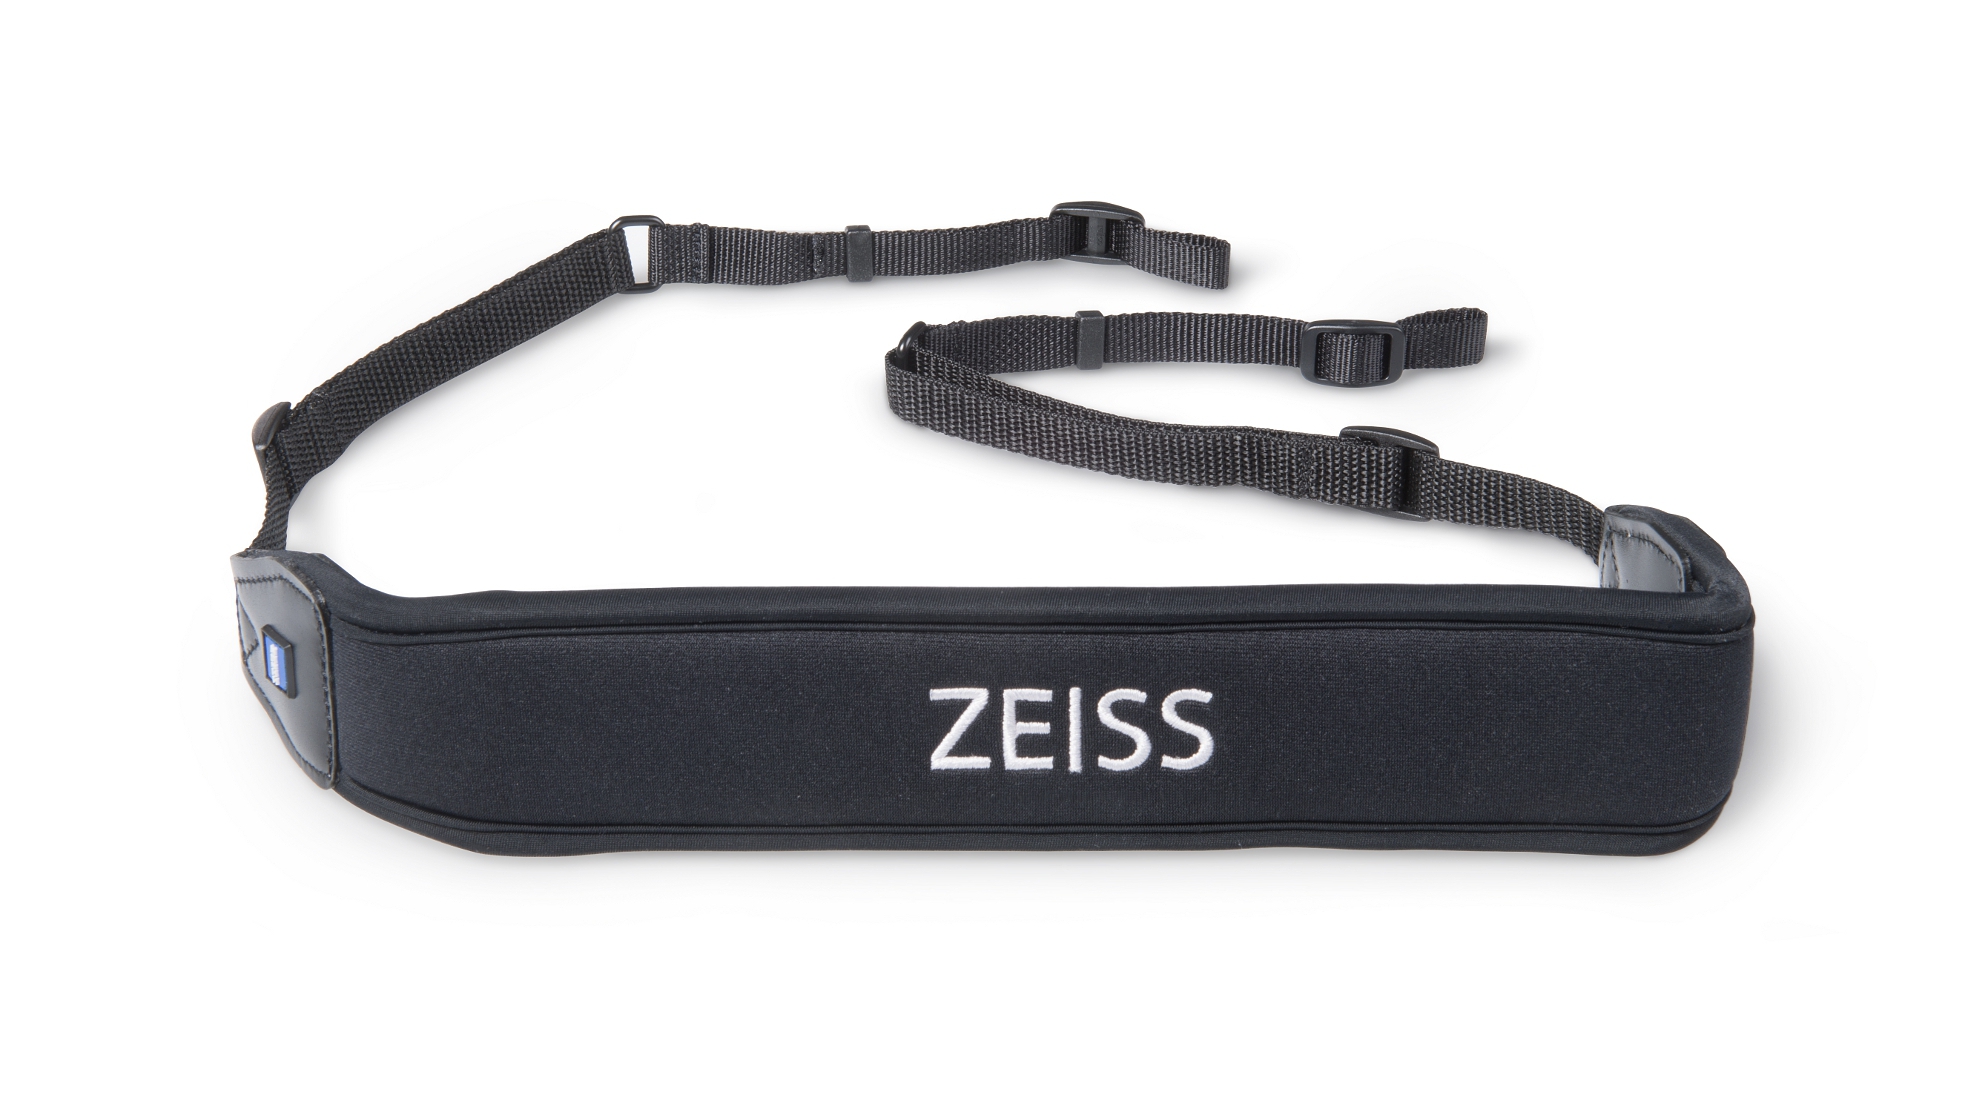 ZEISSコンフォートカメラストラップ | カメラの持ち運びを快適に